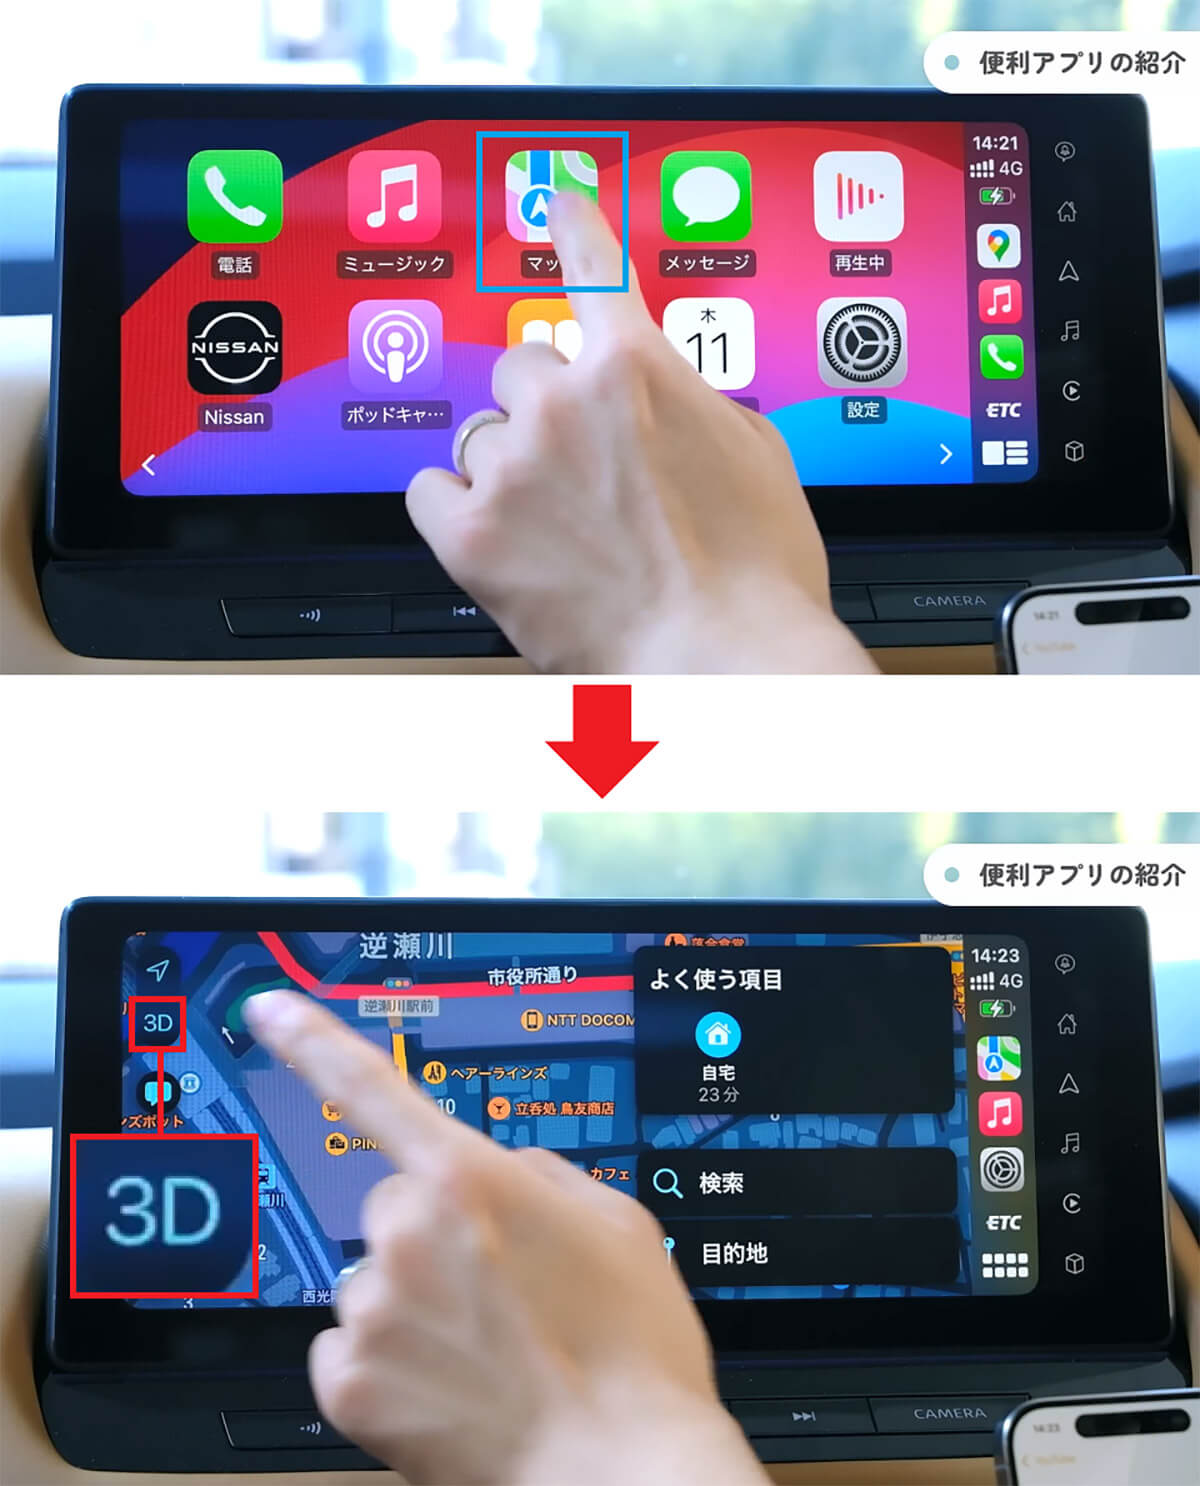 iPhoneの「マップ」アプリで3Dマップを表示する手順1